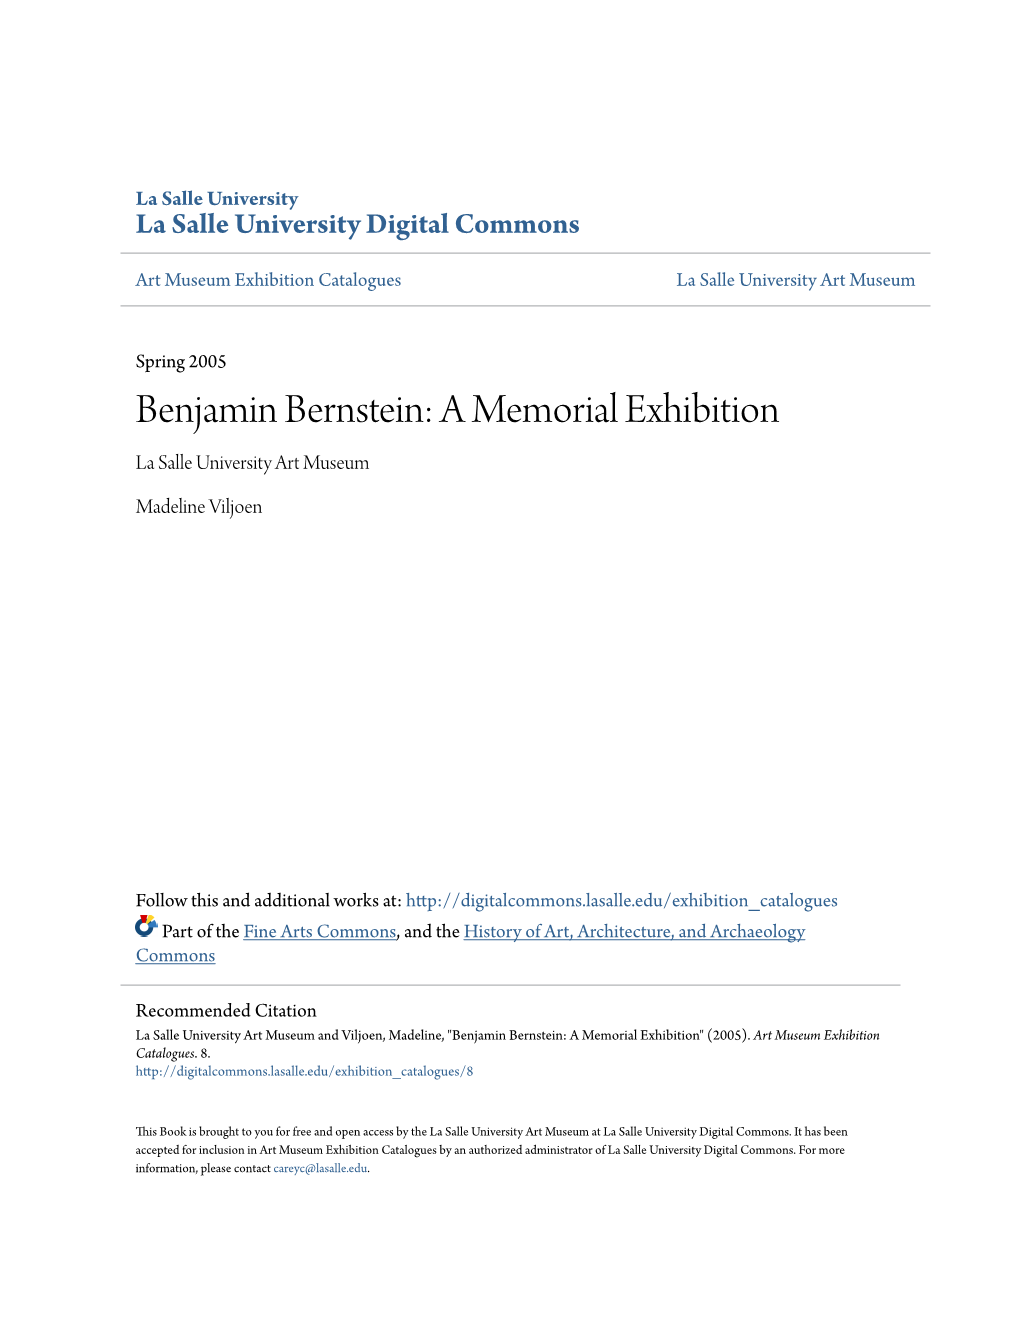 Benjamin Bernstein: a Memorial Exhibition La Salle University Art Museum